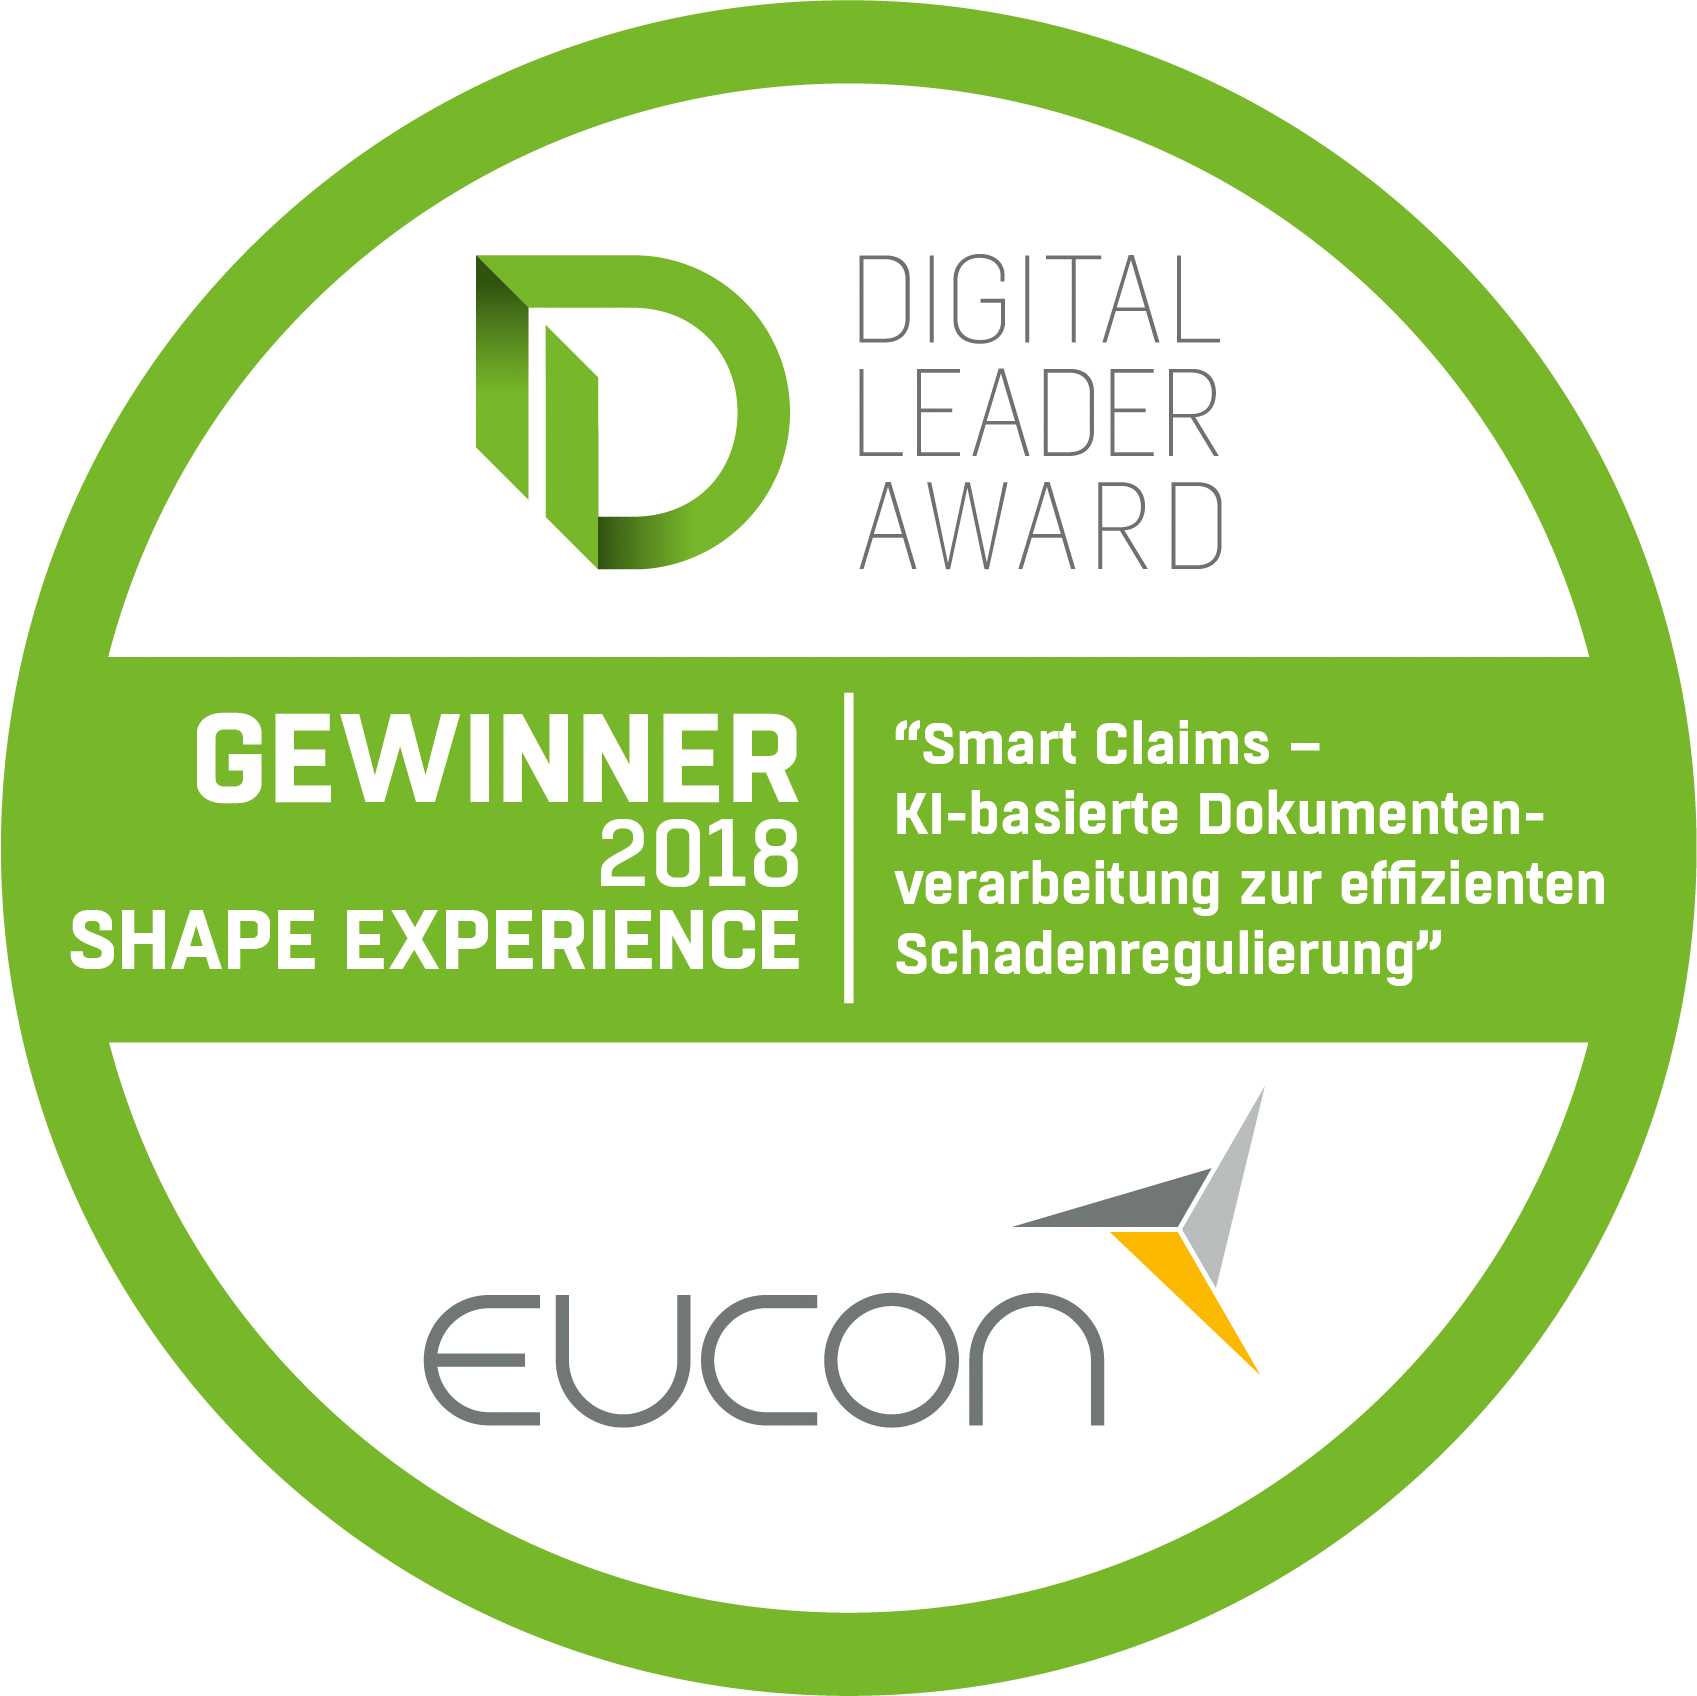 Eucon wins Digital Leader Award